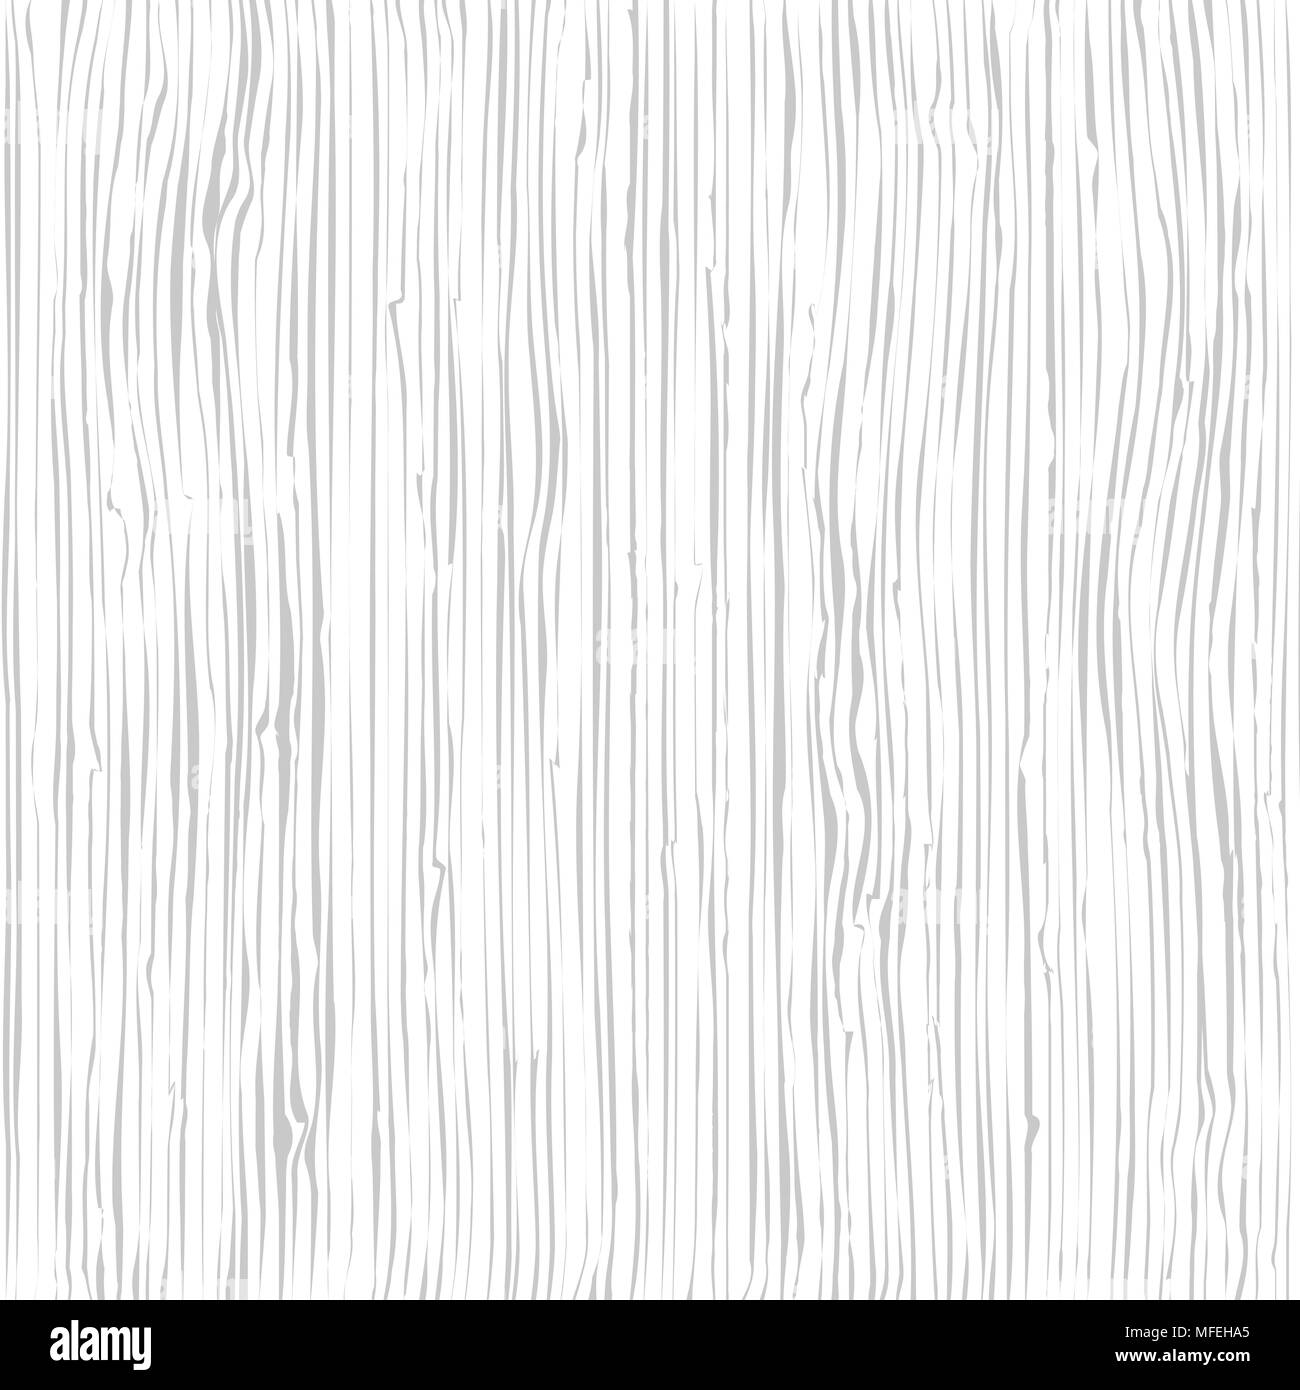 La texture en bois. Wood grain pattern. Arrière-plan de la structure des fibres, vector illustration Illustration de Vecteur